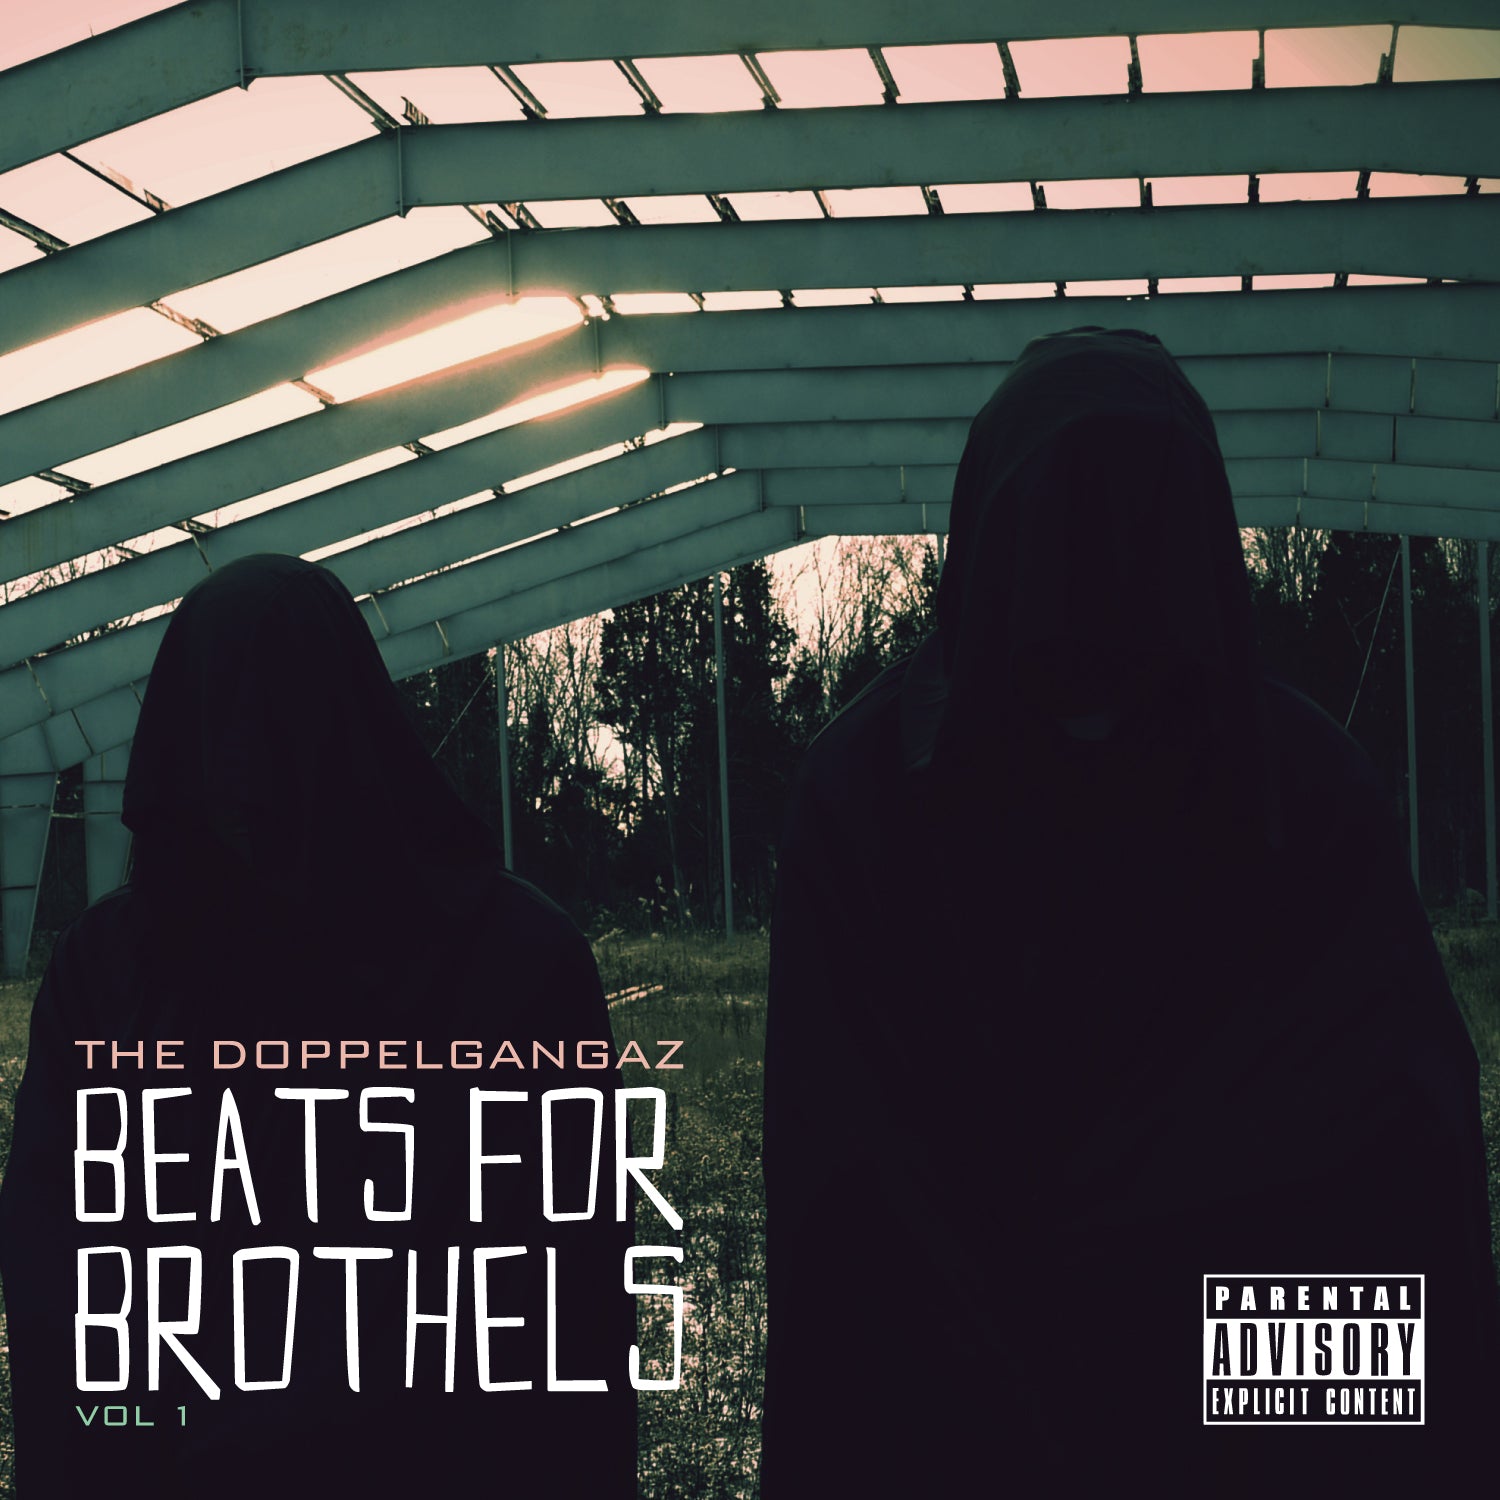 Beats For Brothels, Vol. 1 (Digital Album)